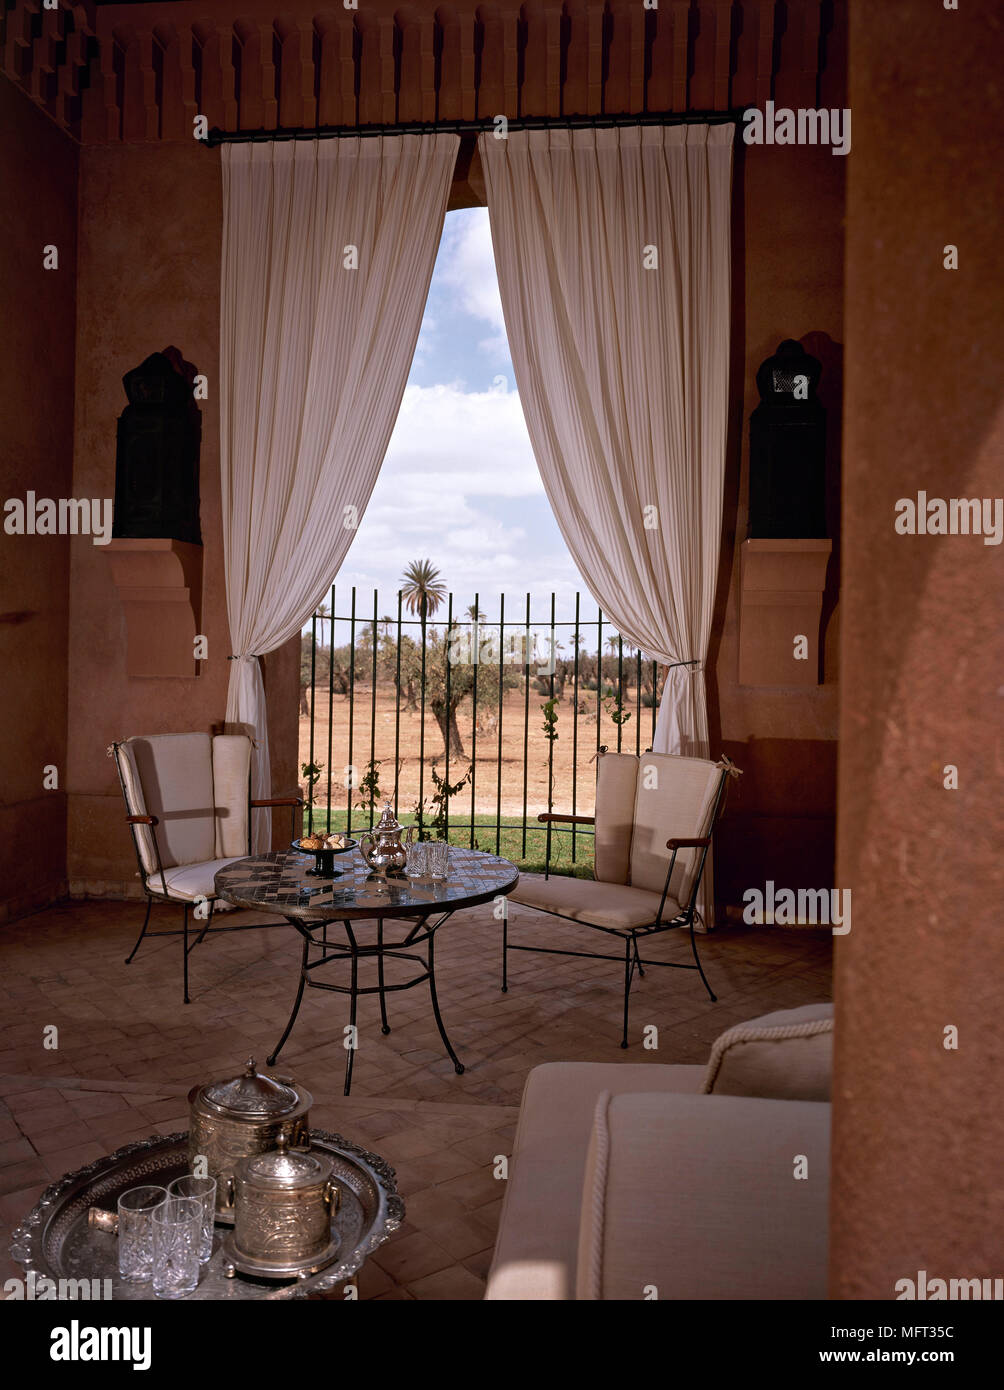 Salón marroquí detalle mesa redonda de metal sillas cortinas interiores  habitaciones influencia étnica colores cálidos Fotografía de stock - Alamy